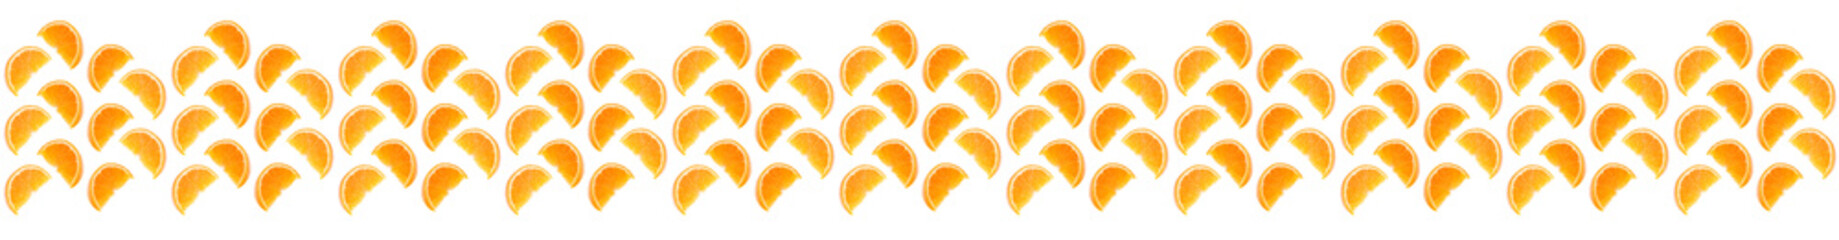 Orange fruit seamless pattern. Orange segments isolated on white background. Food background. Line...